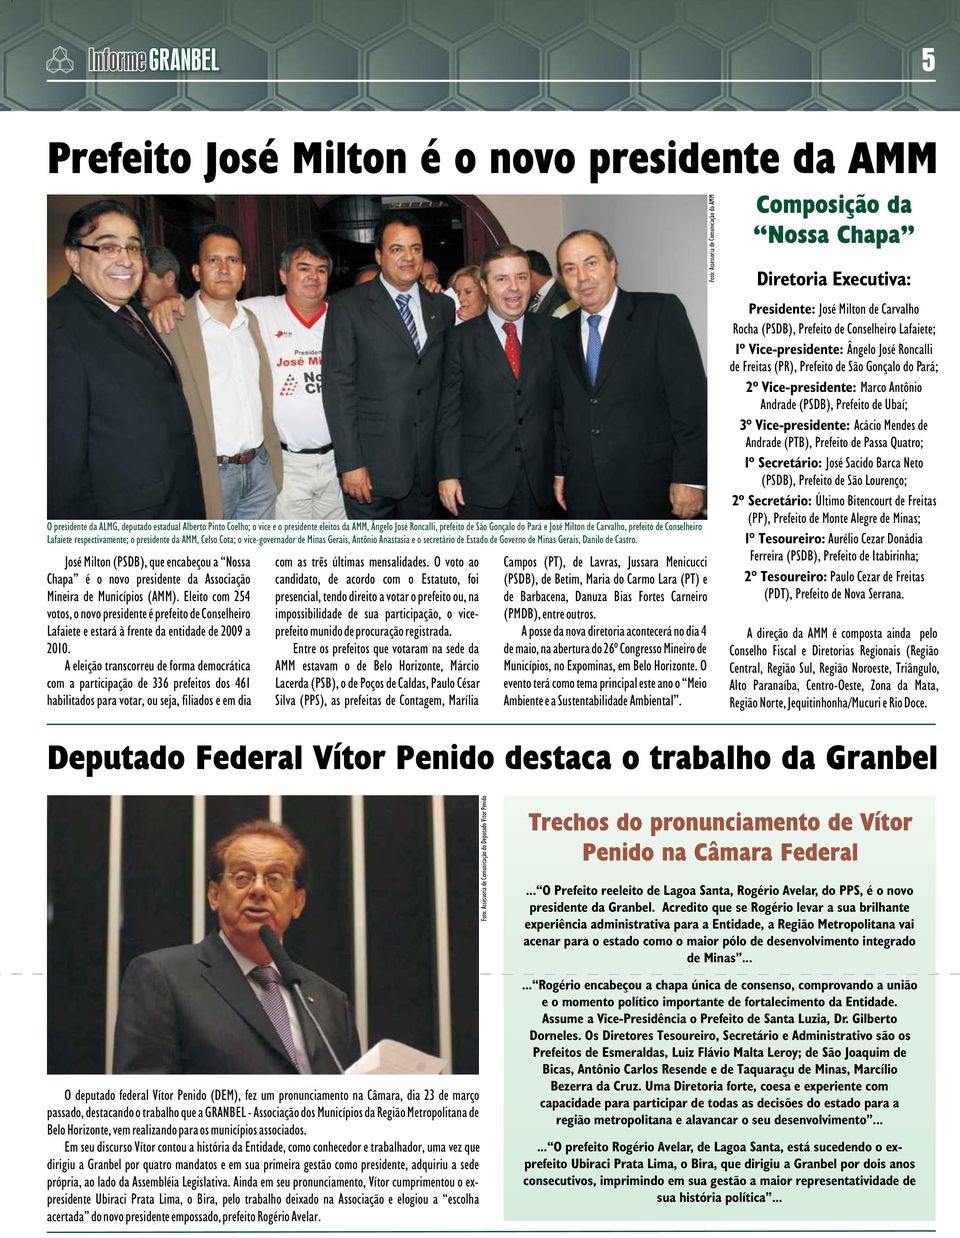 Governo de Minas Gerais, Danilo de Castro. José Milton (PSDB), que encabeçou a Nossa Chapa é o novo presidente da Associação Mineira de Municípios (AMM).